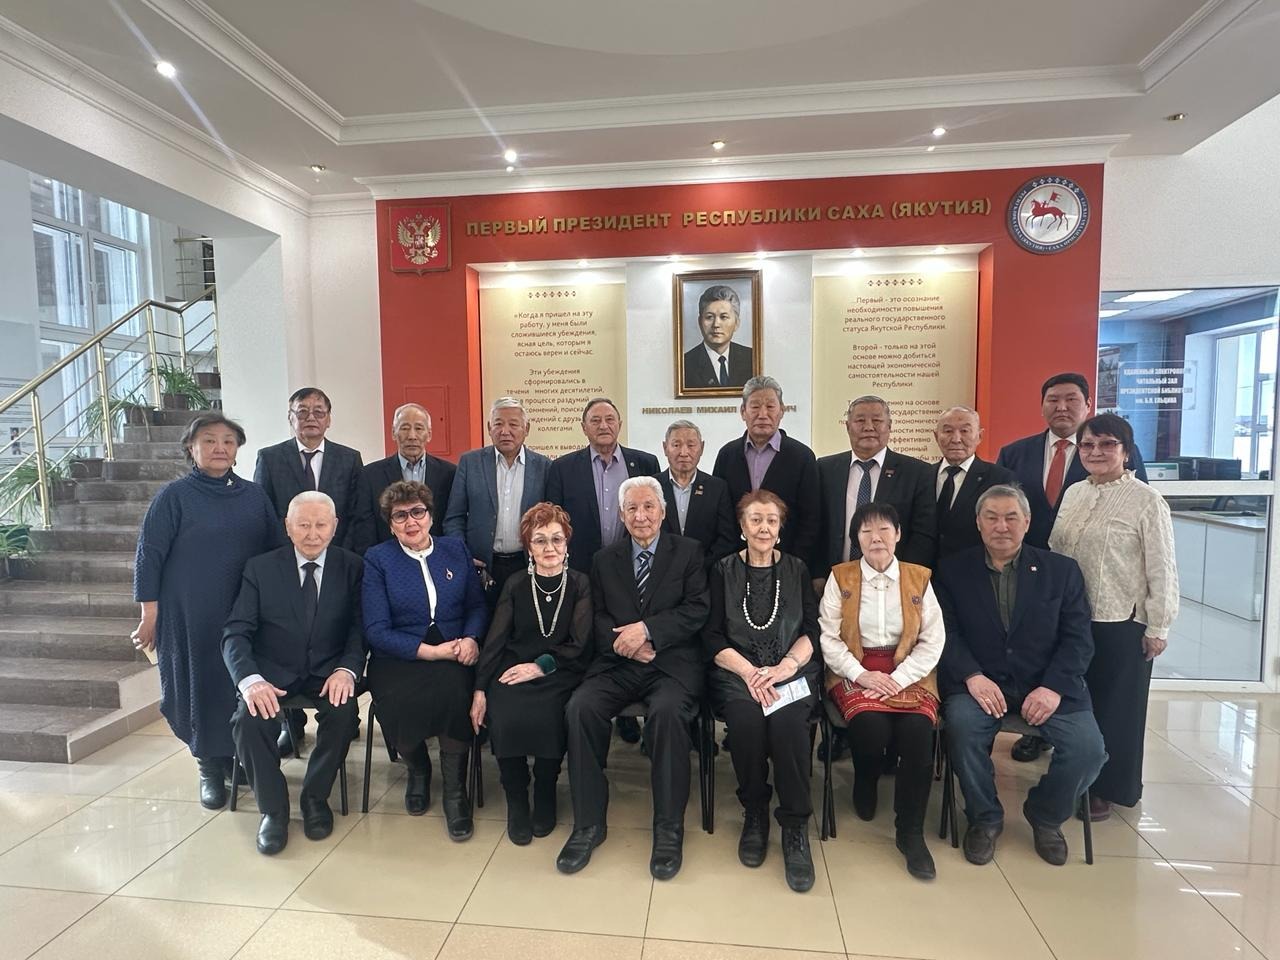 Встреча депутатов Верховного Совета XII созыва ЯАССР состоялась в Николаев-центре